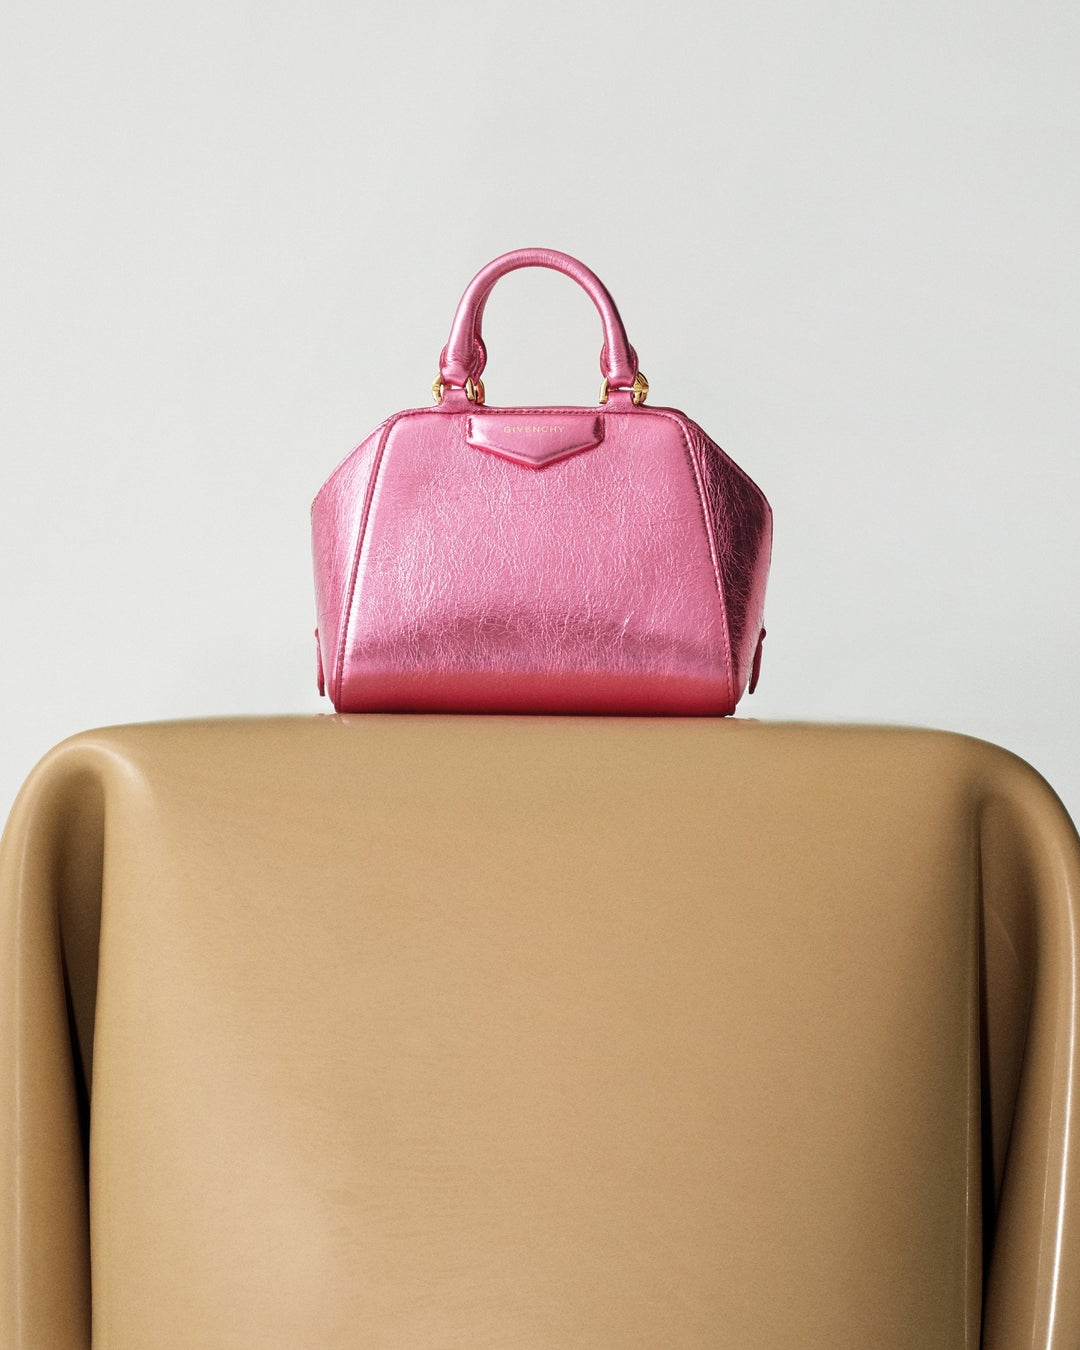 ジバンシィの新作バッグ『アンティゴナ キューブ』が発売